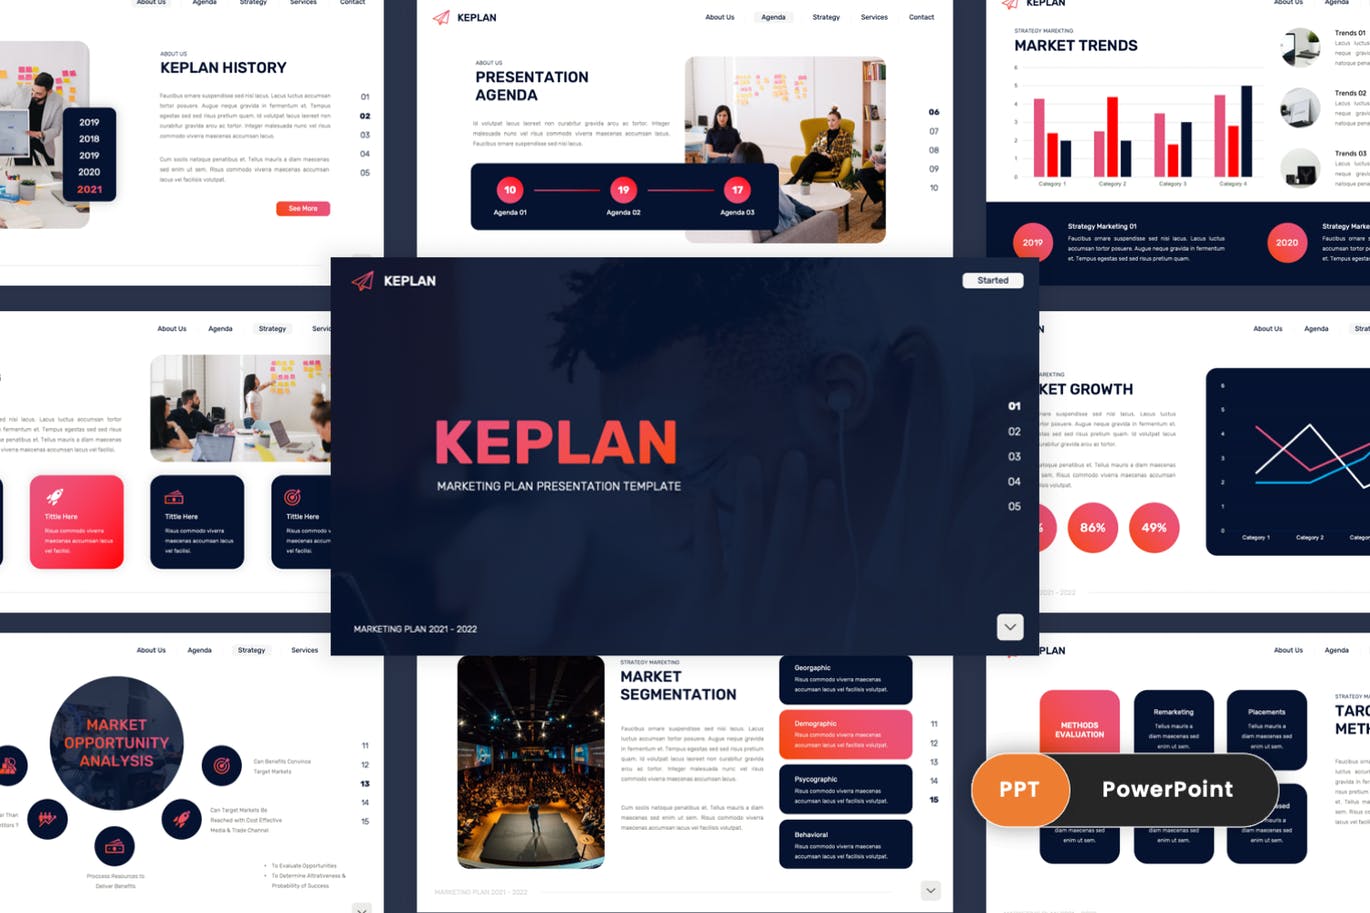 营销计划方案Powerpoint幻灯片模板 Keplan – Marketing Plan PowerPoint Template 幻灯图表 第1张